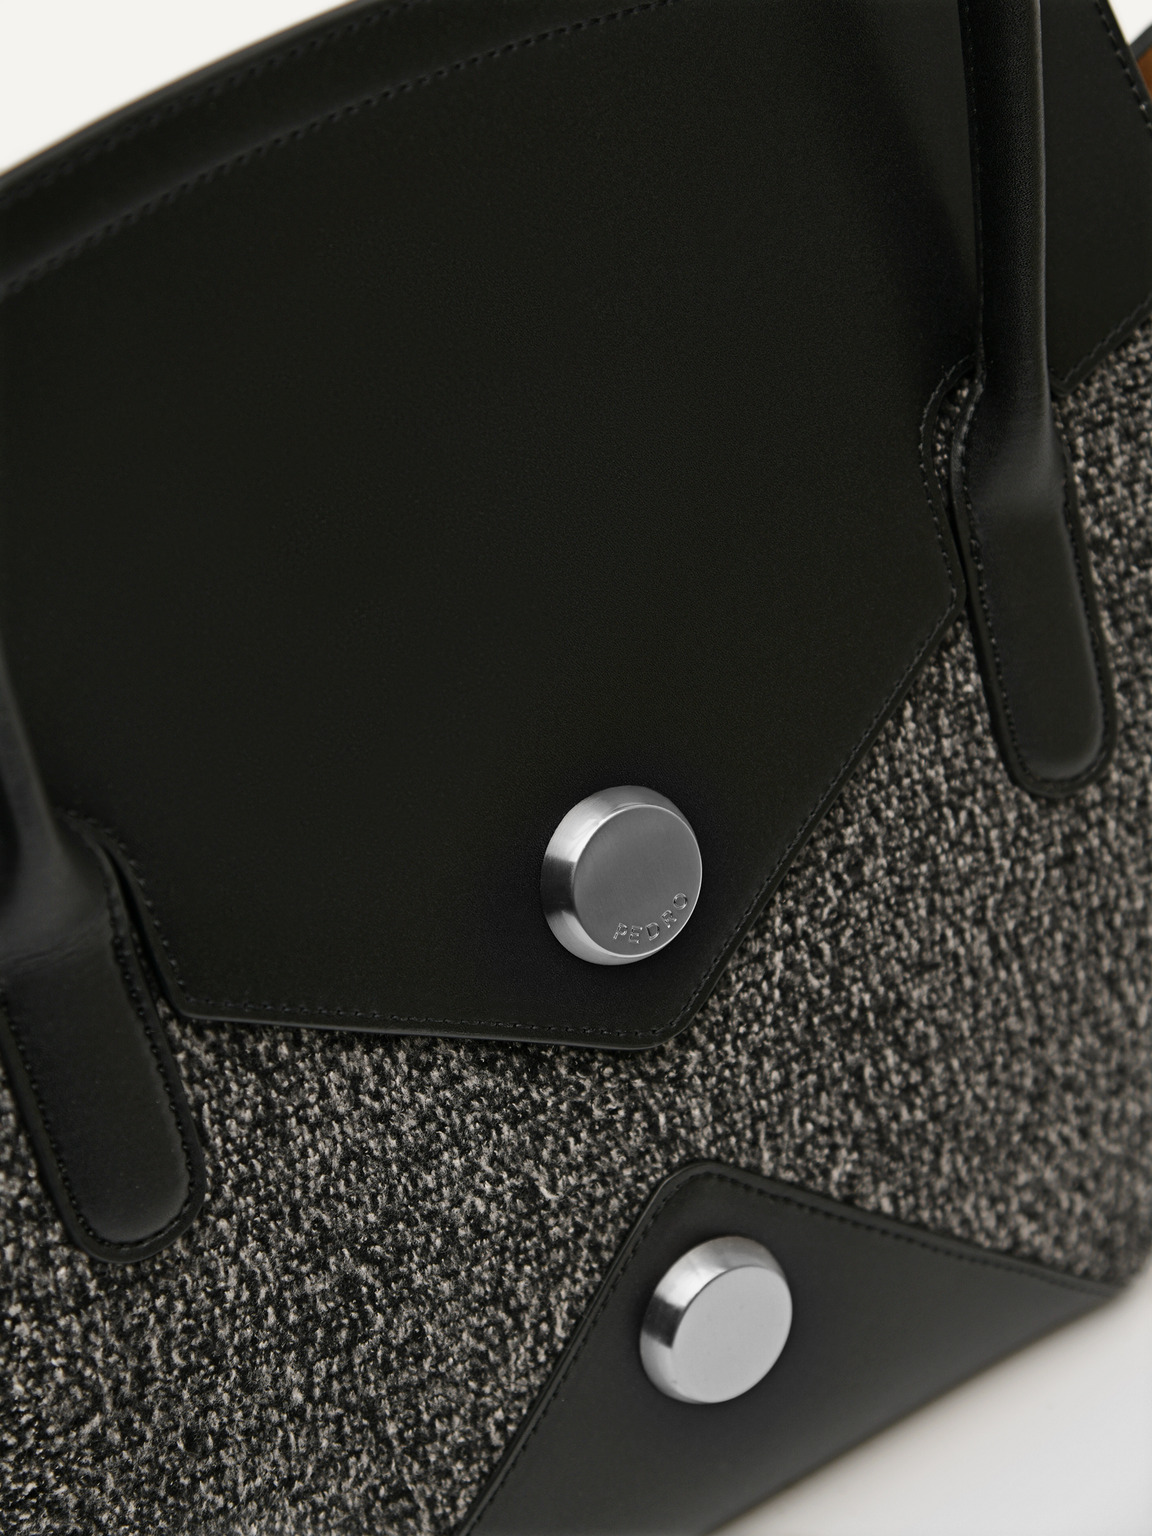 Orb Leather Handbag, Black